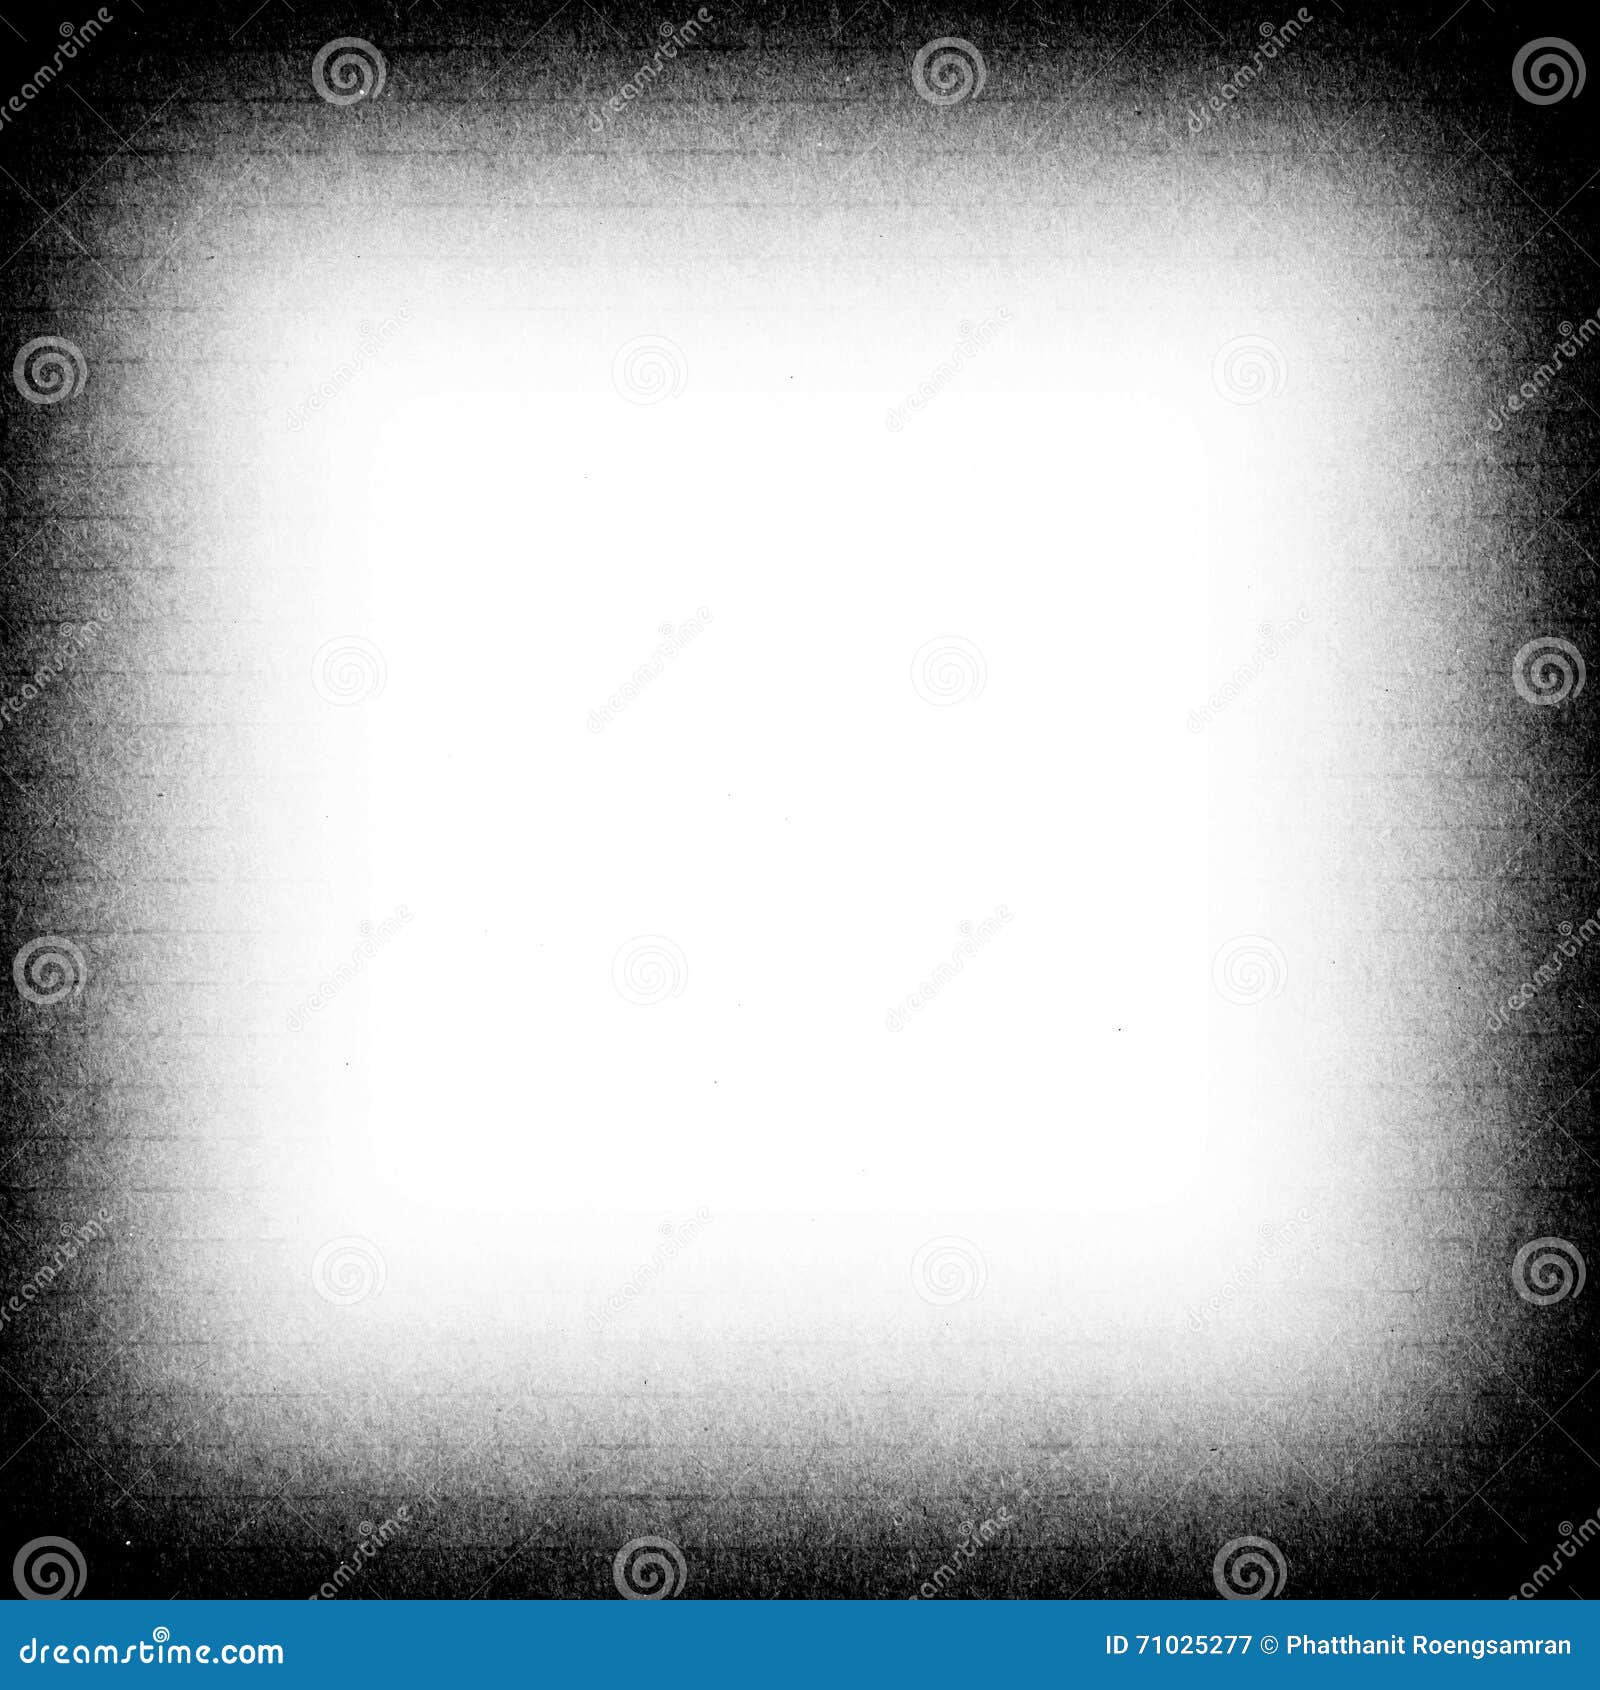 Grunge Vignette Border PNG Transparent For Photoshop (Grunge-And